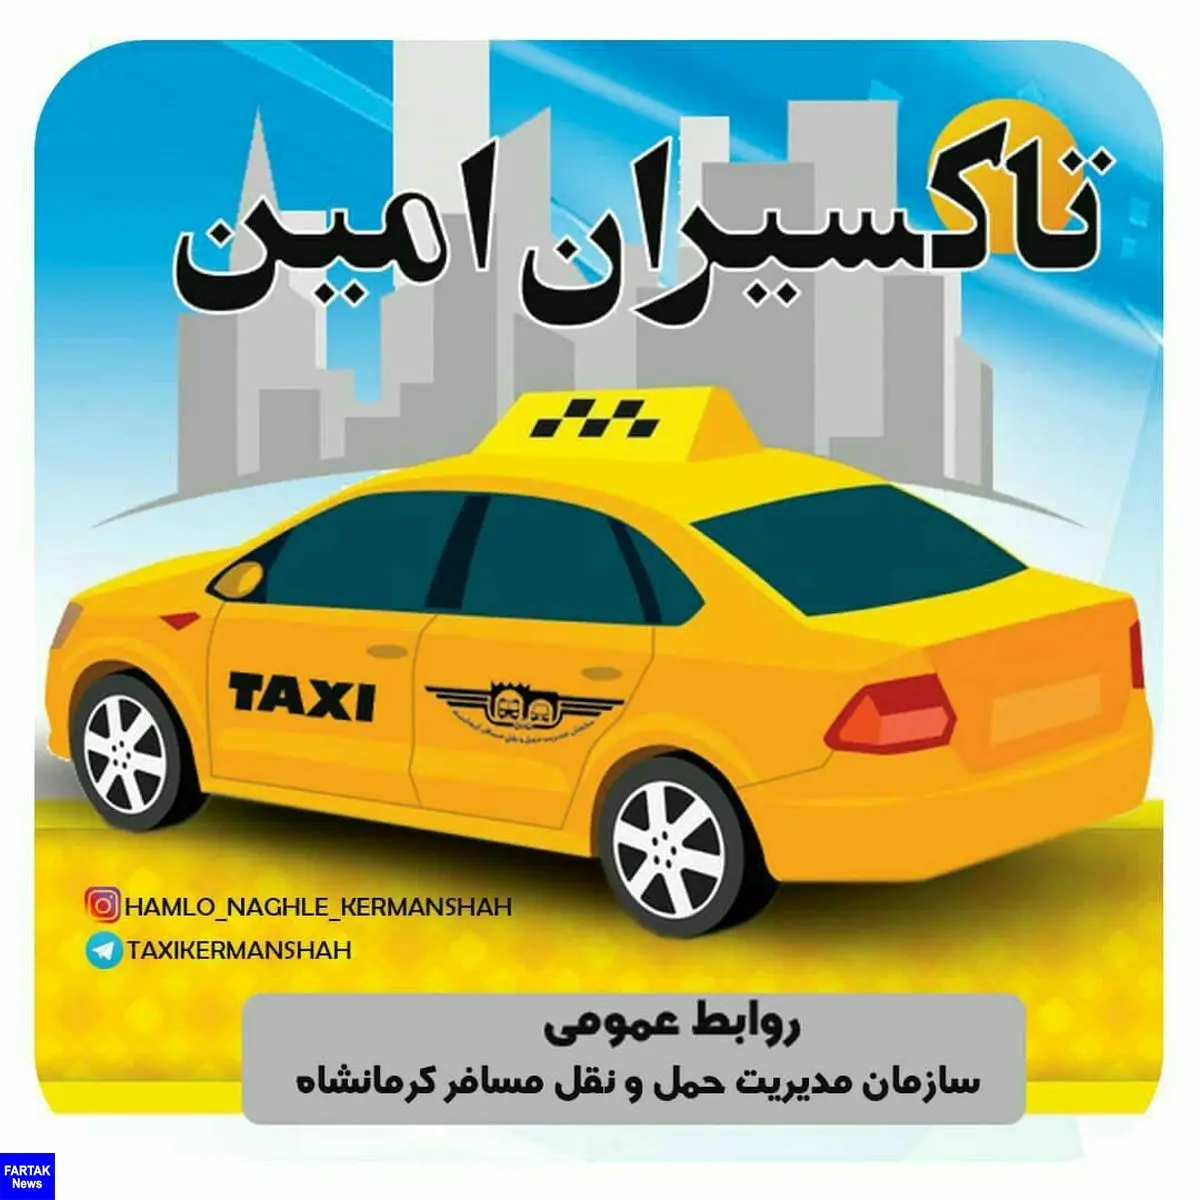 
تحویل 130مورد‍ اشیاء گمشده توسط تاکسیرانان امانتدار شهر کرمانشاه